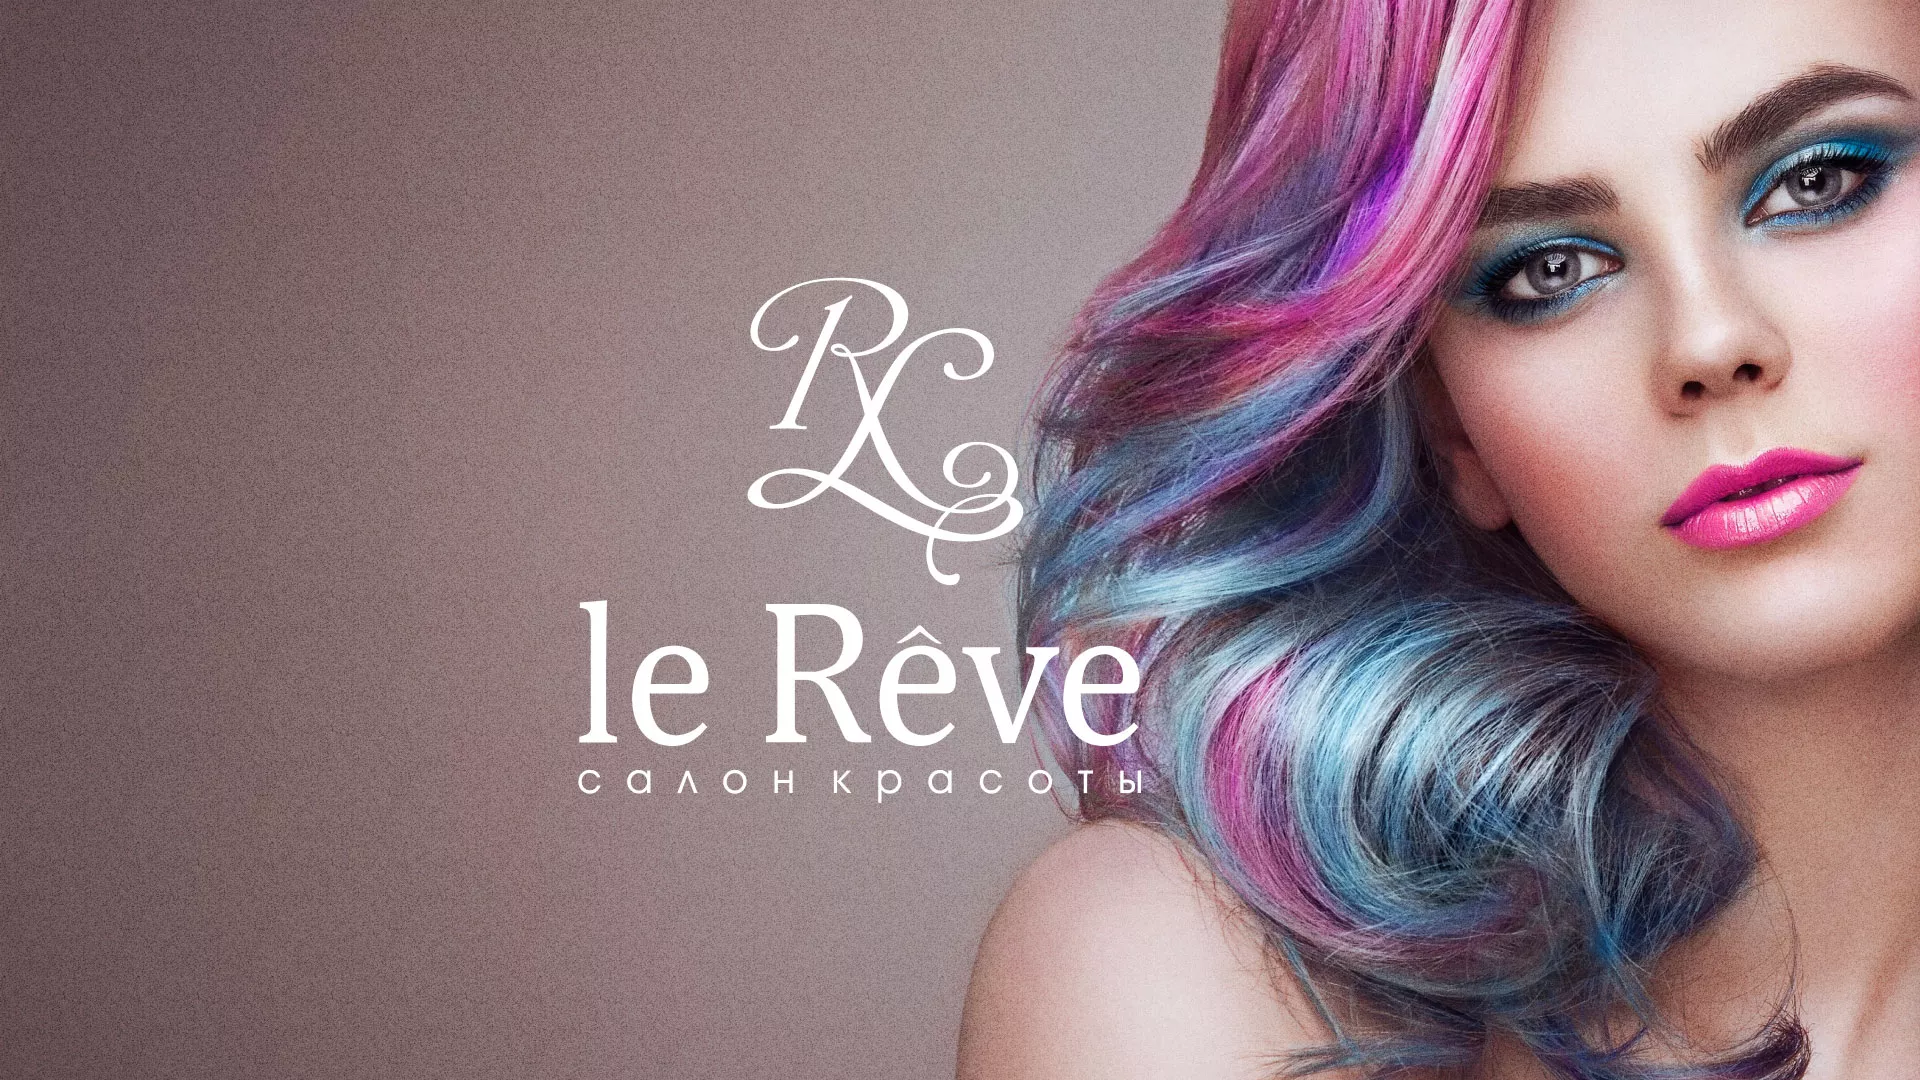 Создание сайта для салона красоты «Le Reve» в Ипатово